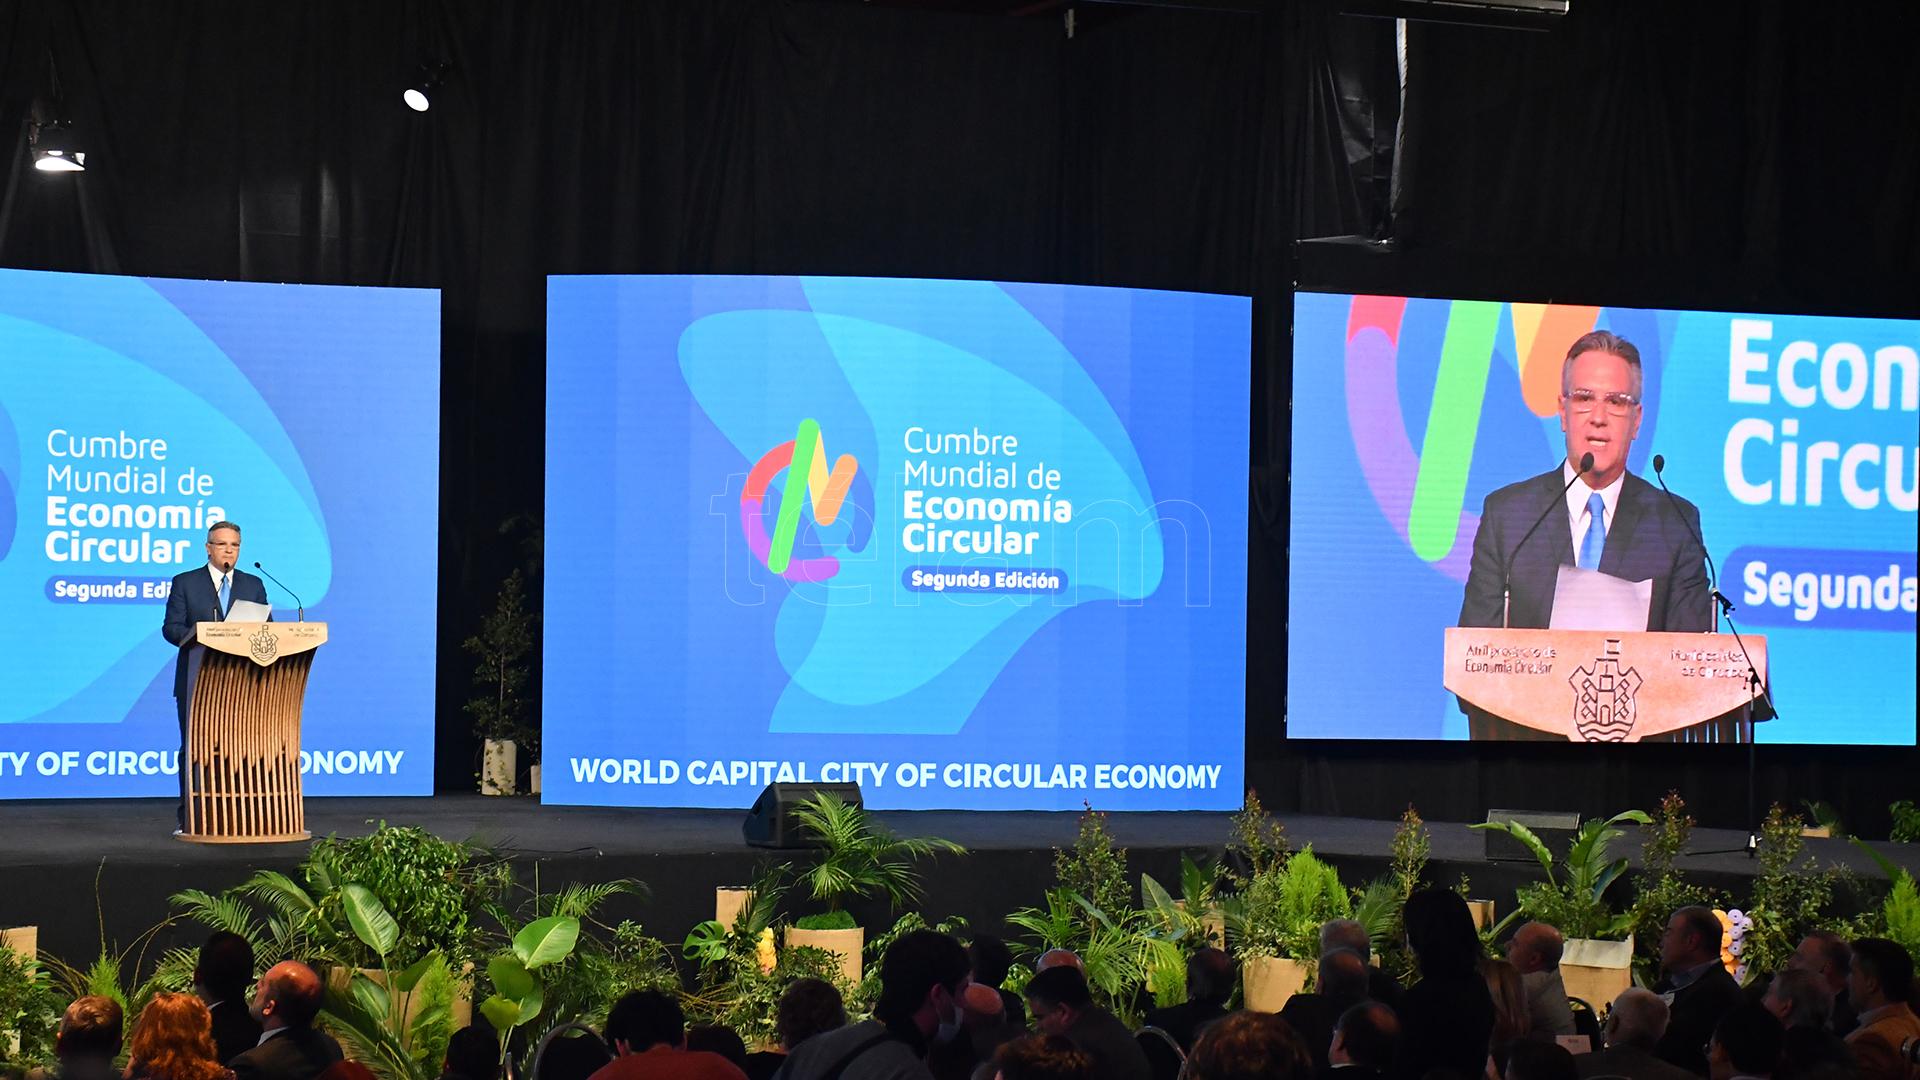 Cumbre Mundial de Economía Circular: un impulso por el desarrollo sostenible de las ciudades